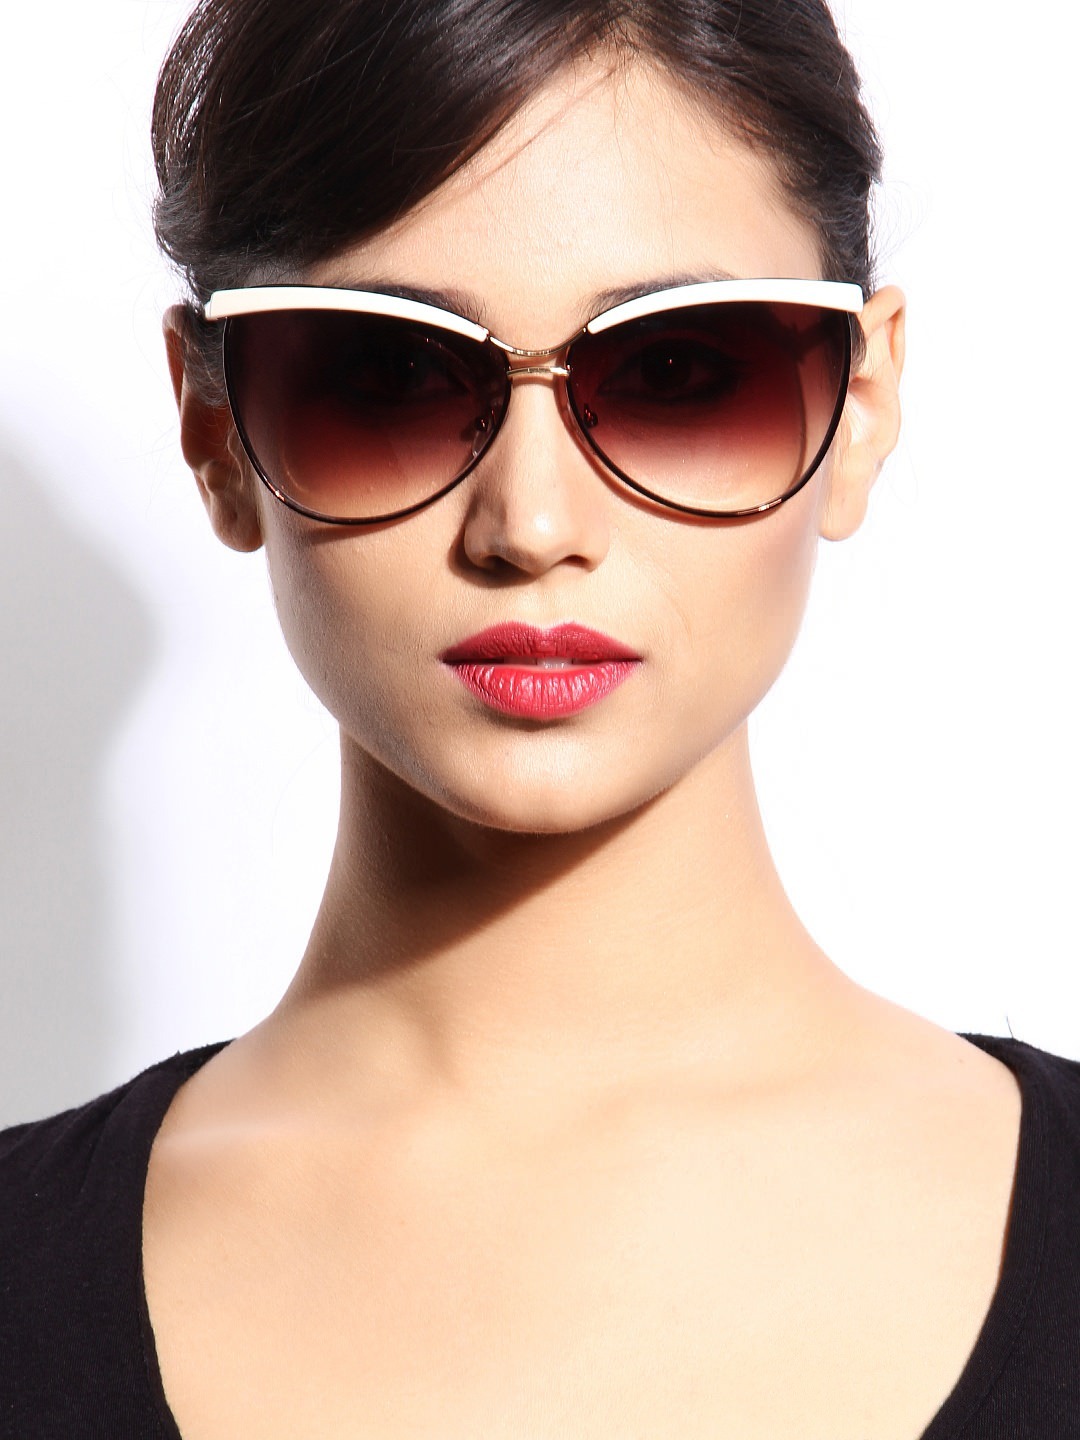 sunglasses-for-women_